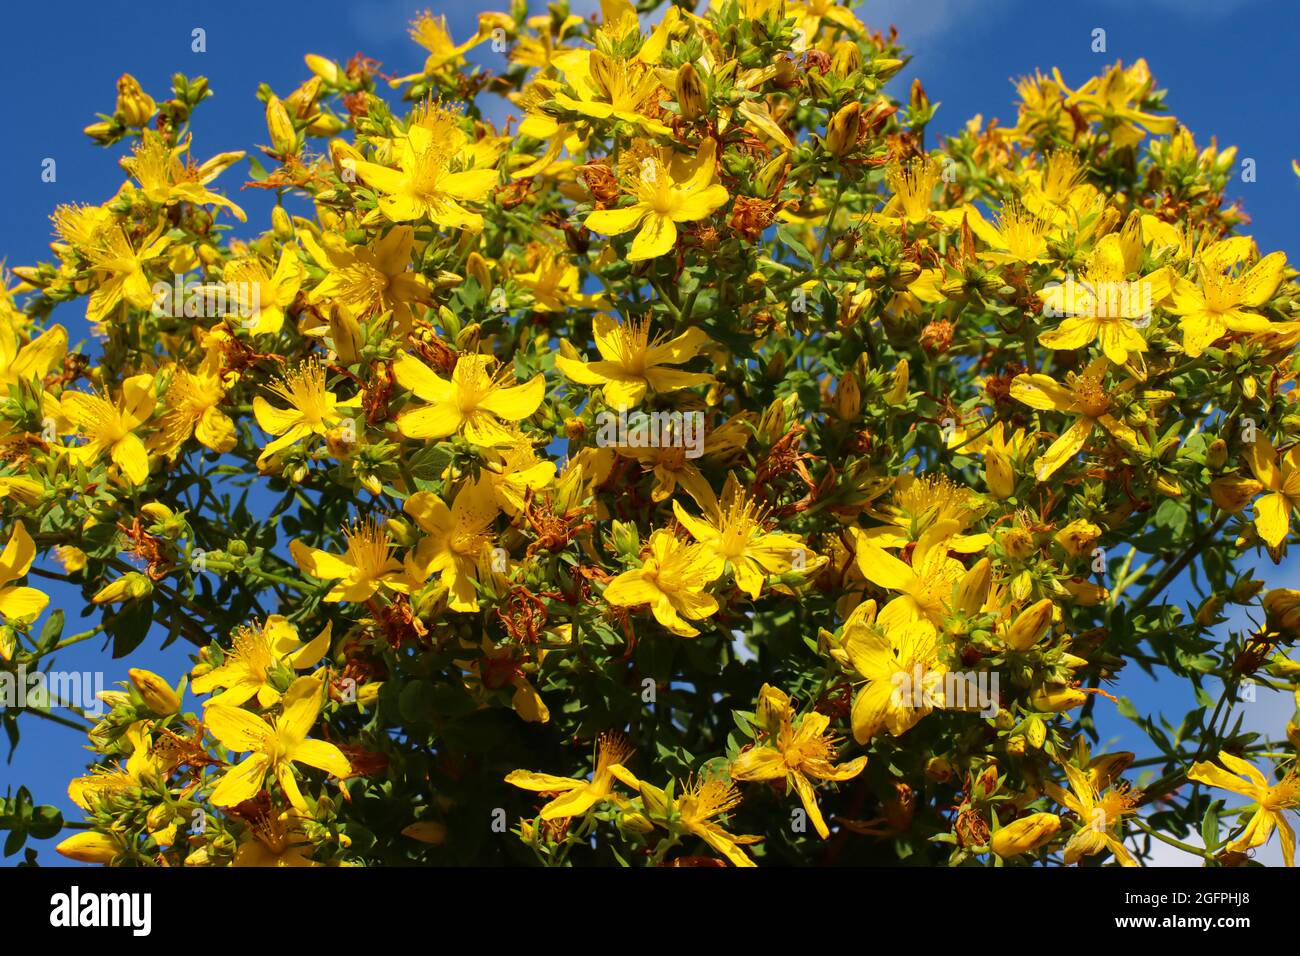 Hypericum perforatum L. wort medicinal medicinal plant, macro close-up. Stock Photo